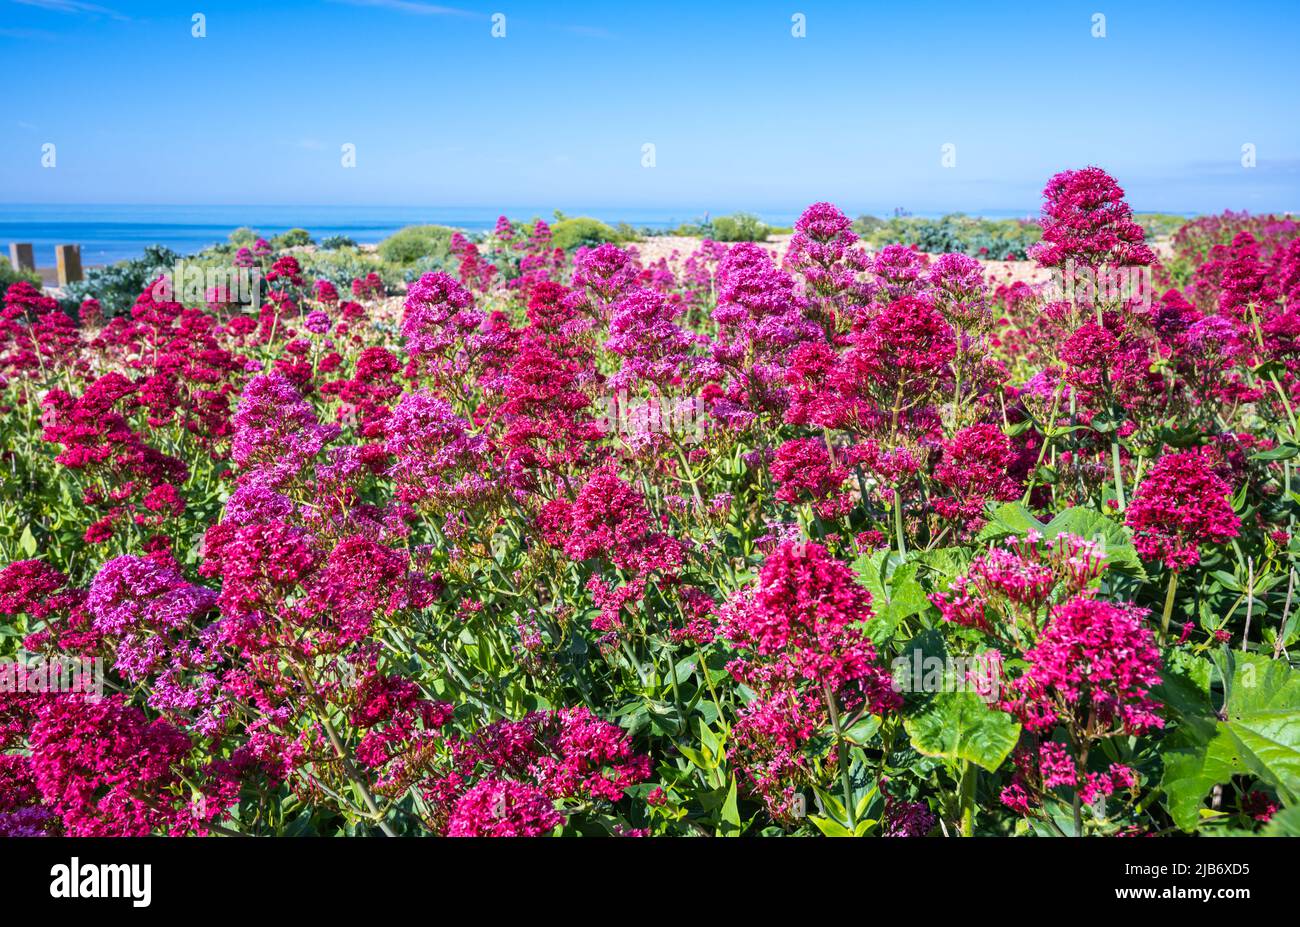 Rote Baldrianpflanze (Centranthus ruber), AKA Spur Baldrian, Kiss-me-Quick, Fuchsbürste, Jupiterbart, An einem Strand im Frühling in West Sussex, Großbritannien. Stockfoto